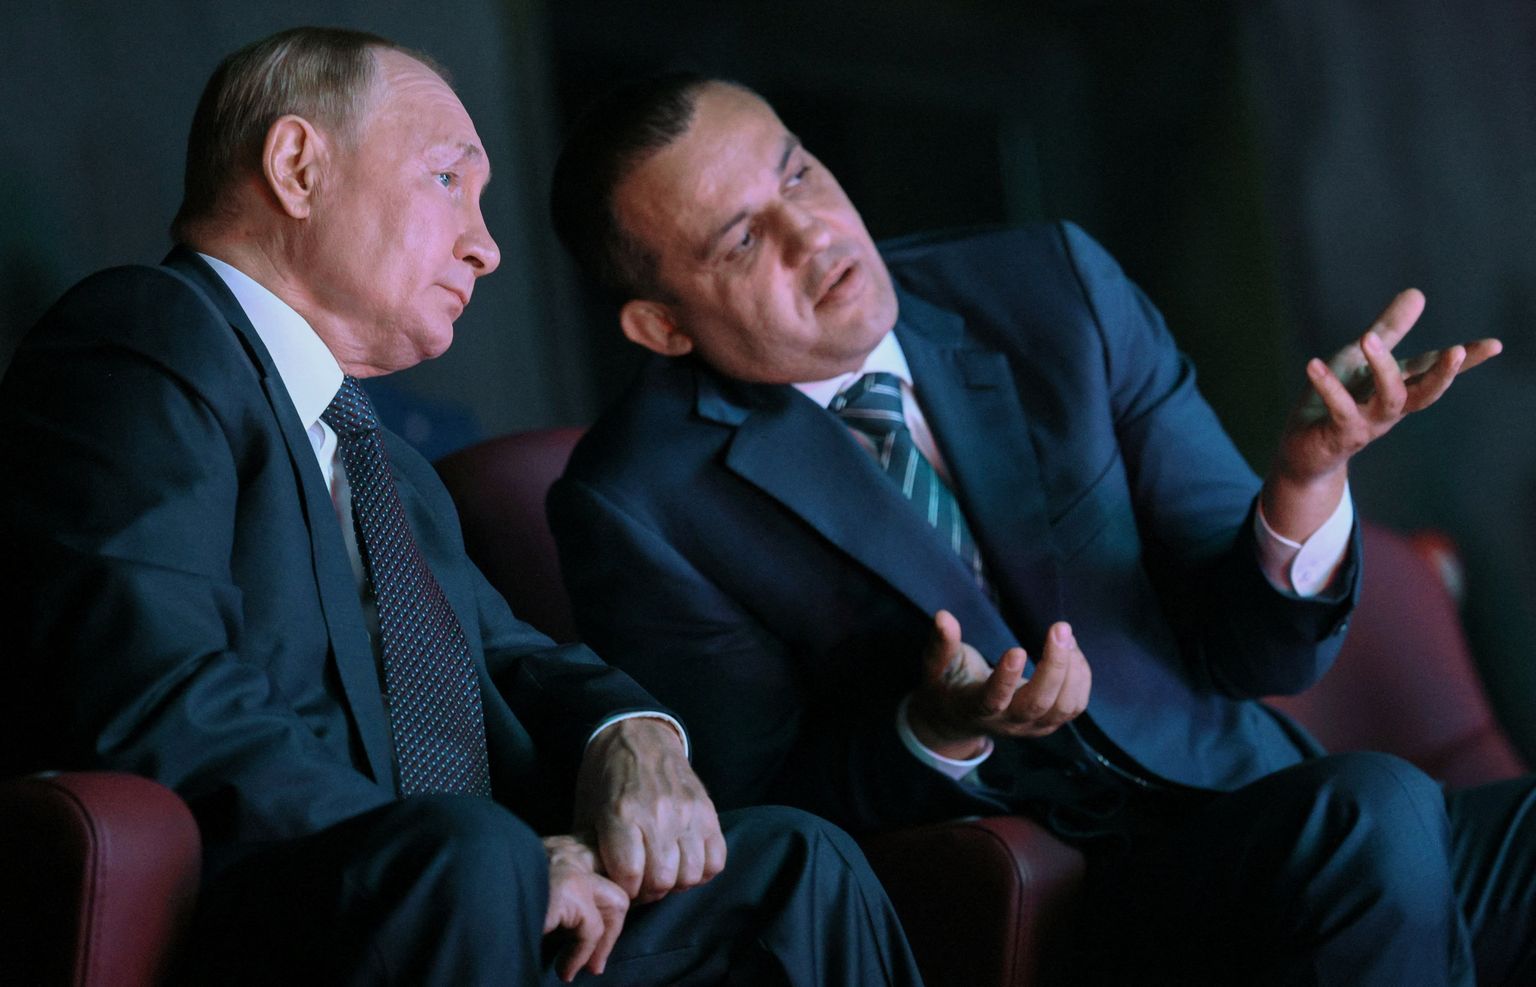 Venemaa president Vladimir Putin ja Rahvusvahelise Poksliliidu president Umar Kremlev.